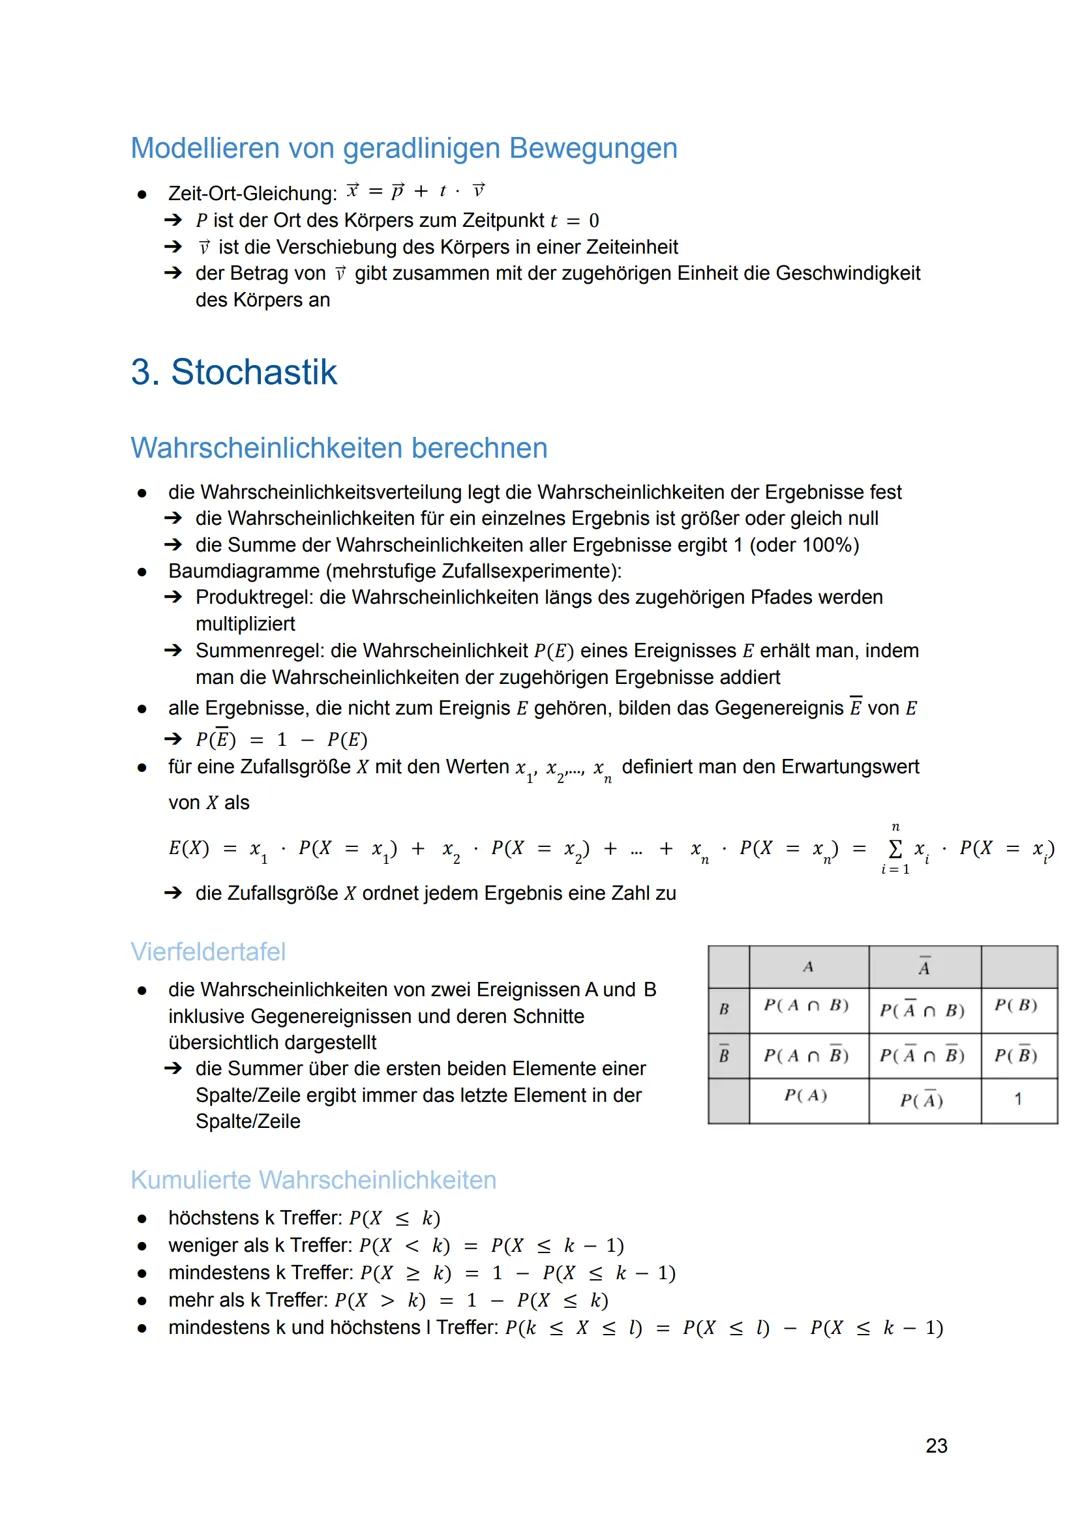 
<h2 id="analysis">Analysis</h2>
<h3 id="funktionen">Funktionen</h3>
<p>Die ganzrationalen Funktionen n-1 + a₁x¹ + ax; neN heißen auch Polyn